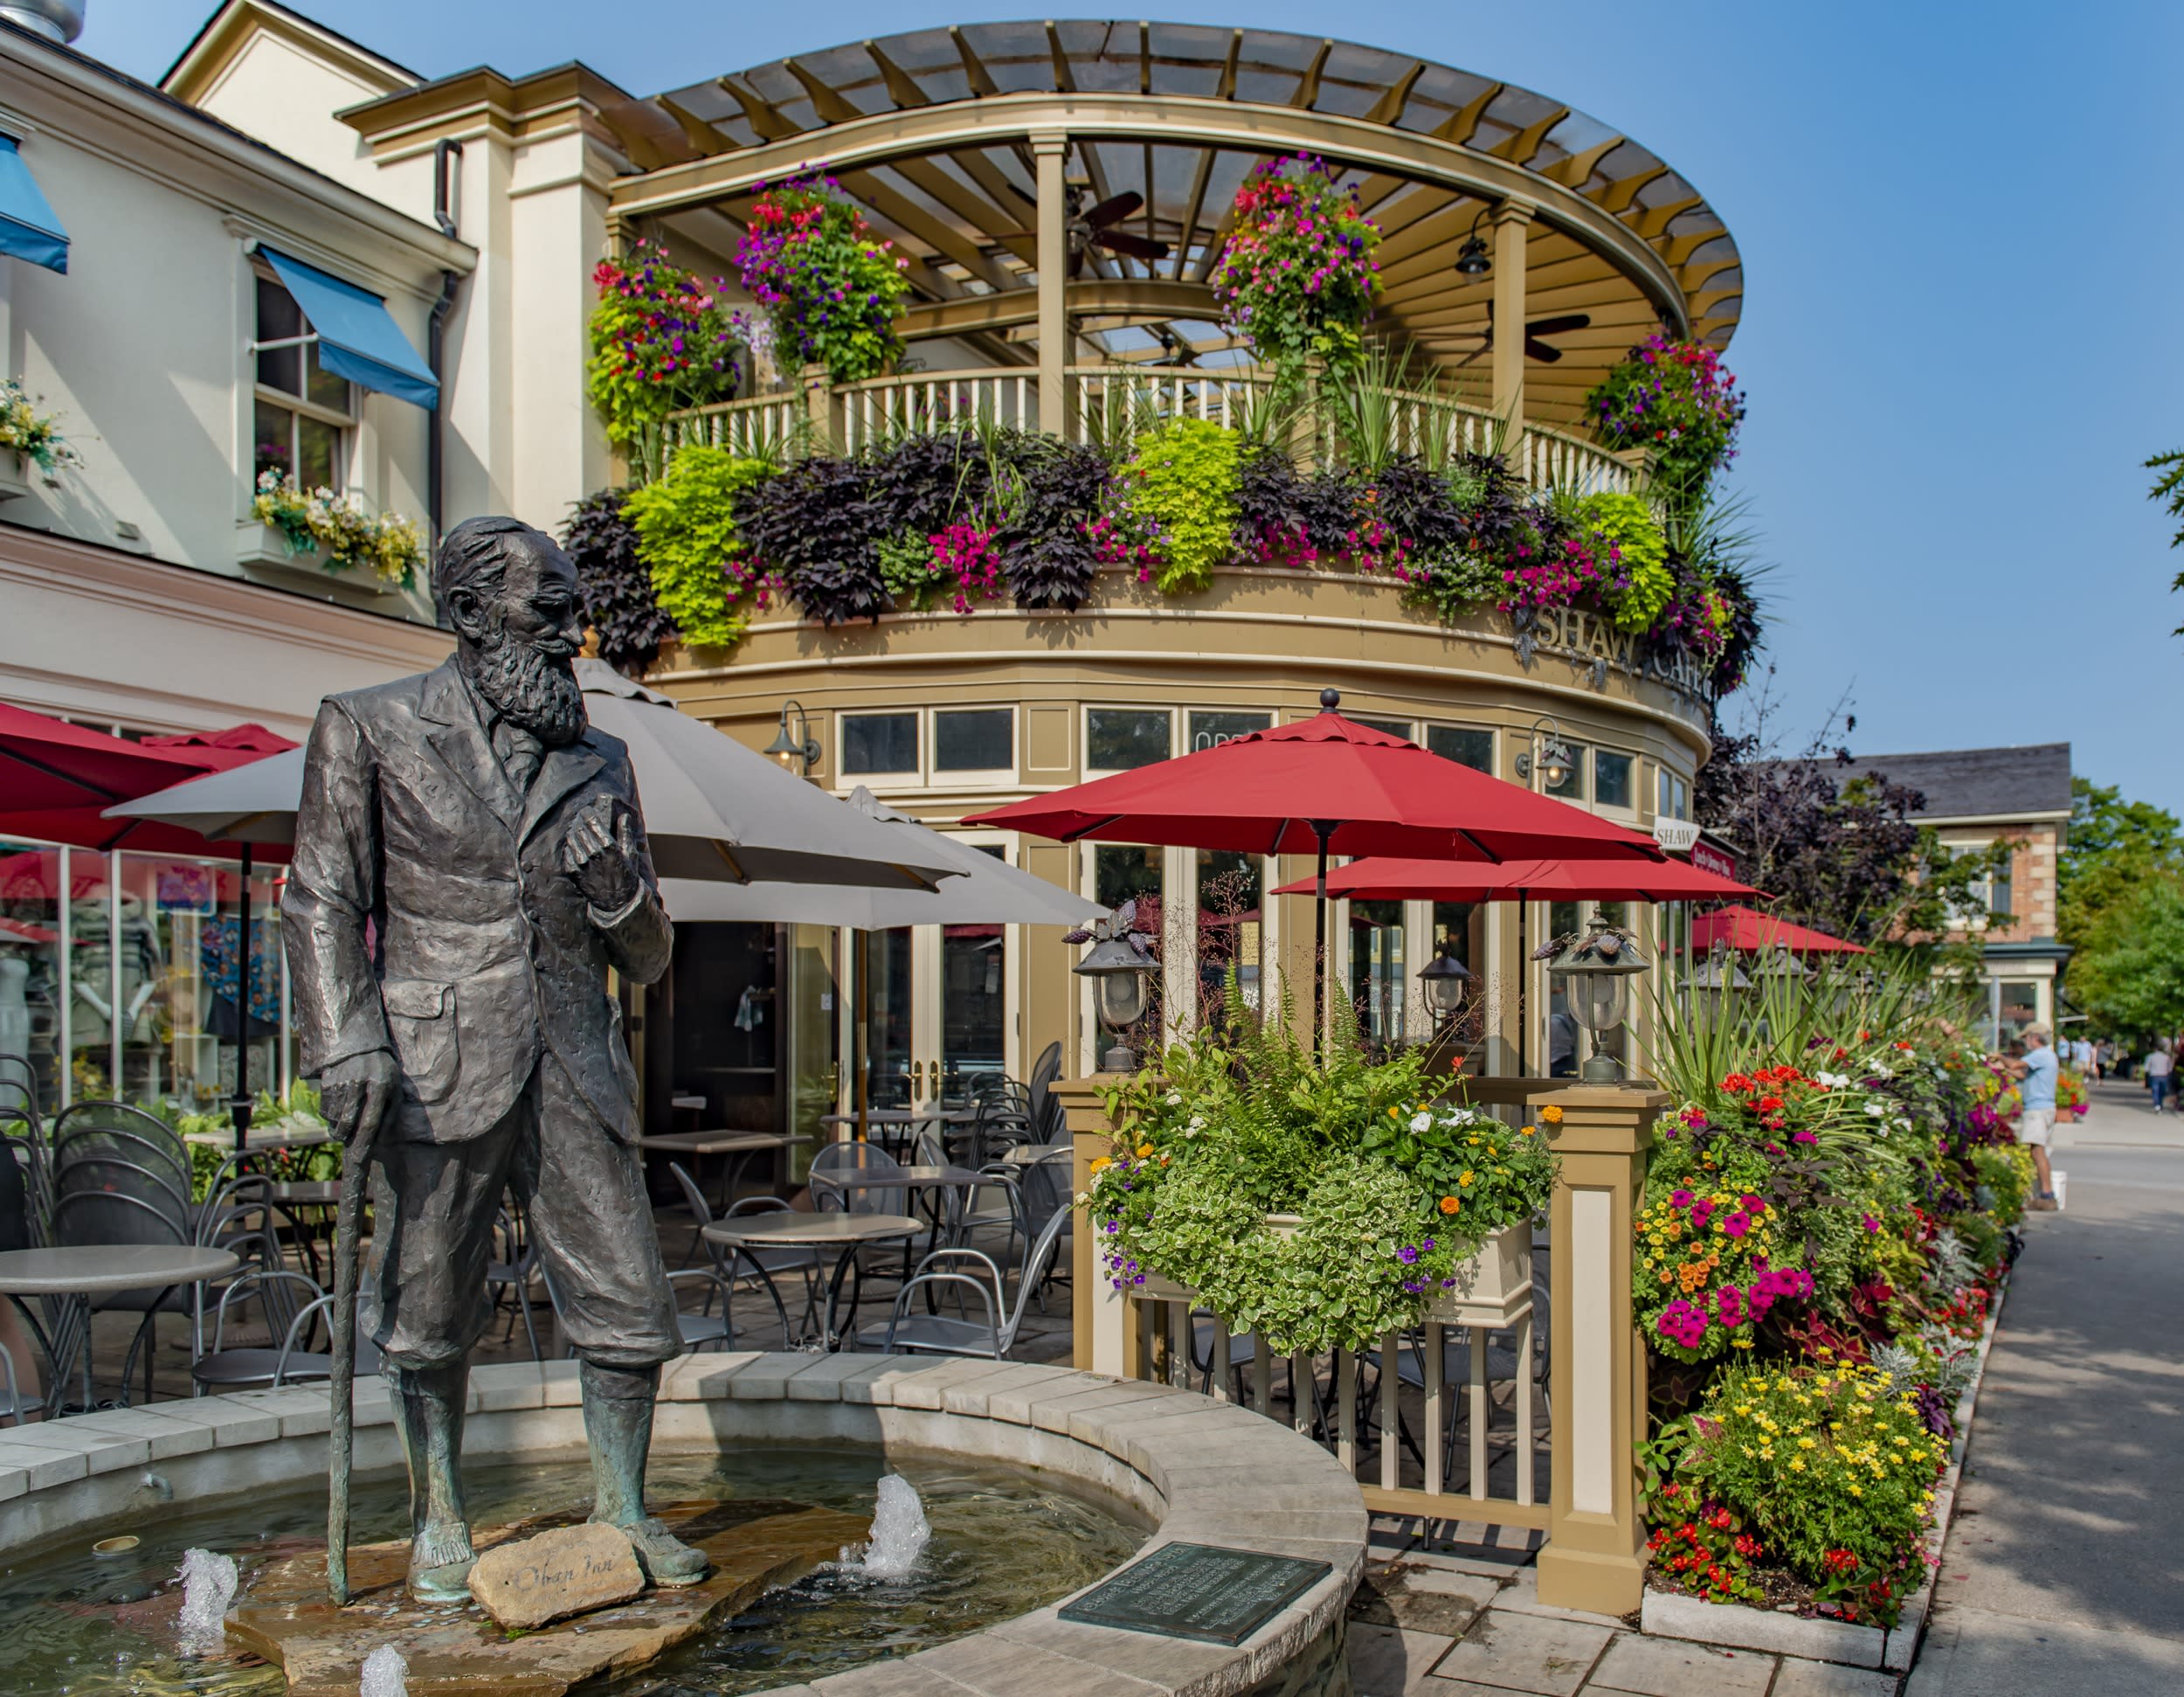 George Bernard Shaw Statue and Fountain in Niagara-on-the-Lake, near Niagara Falls, ON